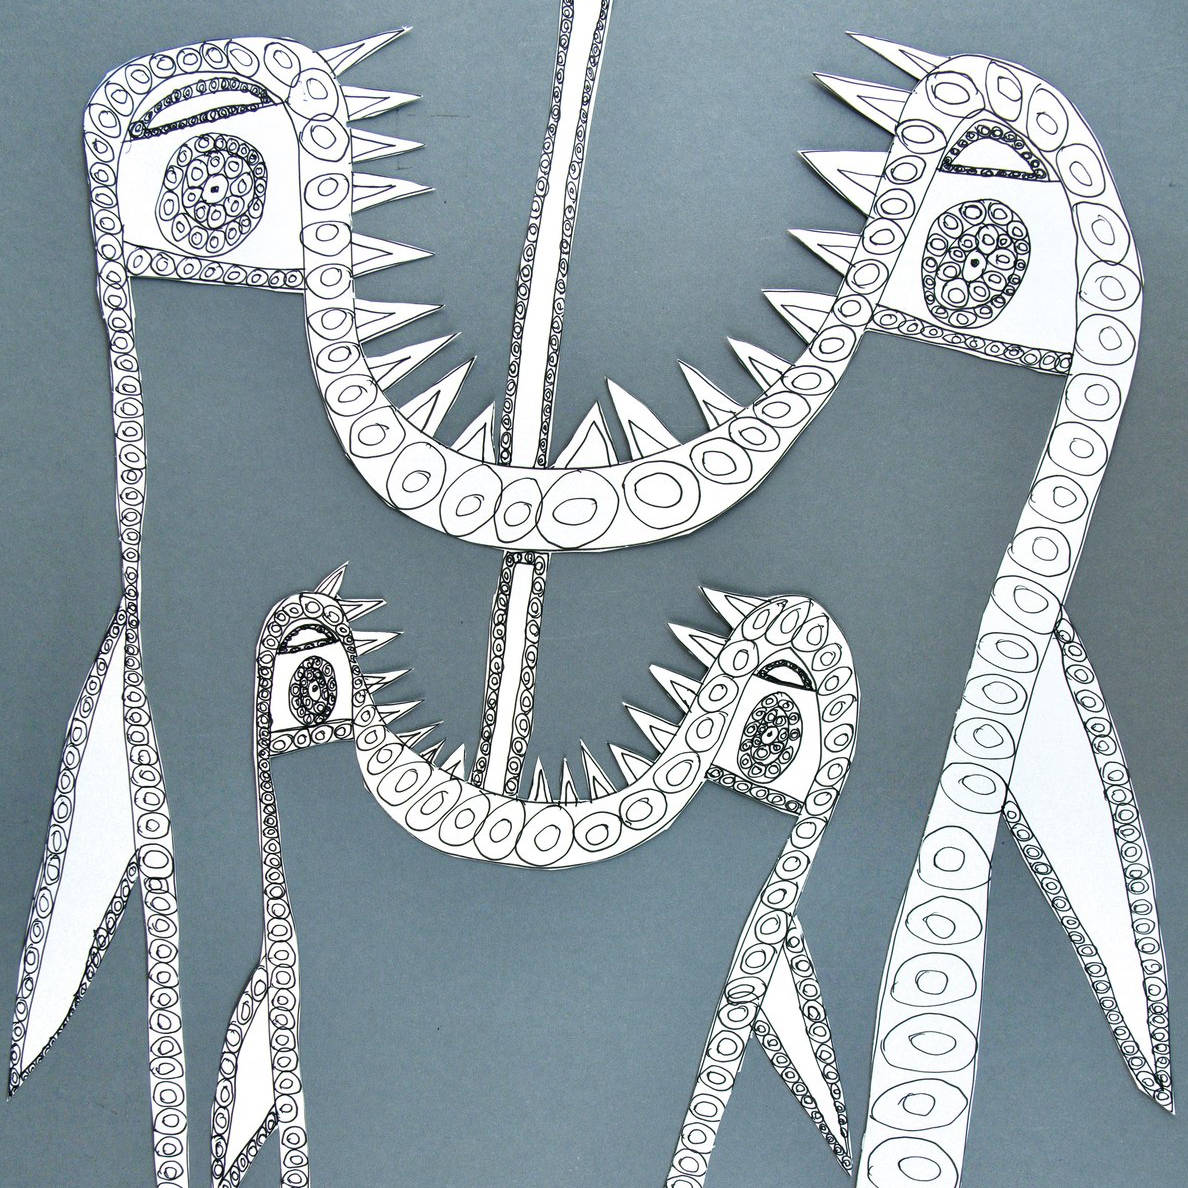 Foto des Werkes Schlangentor von Bärbel Lange. Klare, feine, schwarze Linien auf Papier zeigen zwei charaktervolle Gestalten. Diese sind auf grau-blauem Hintergrund plaziert.